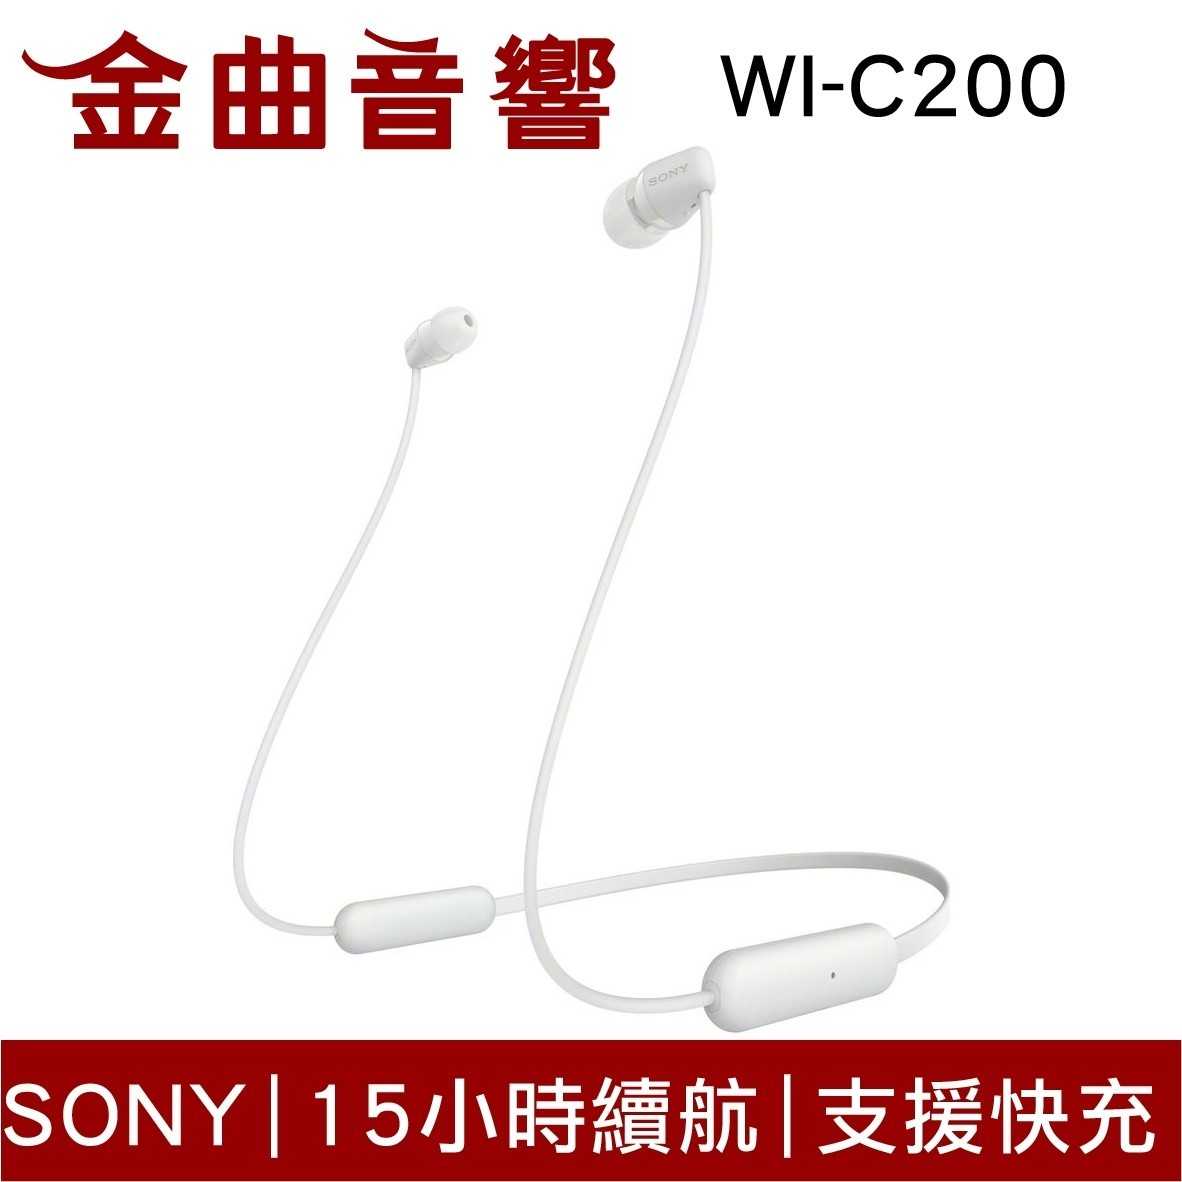 SONY 索尼 WI-C200 兩色可選 無線入耳式 藍牙耳機 | 金曲音響